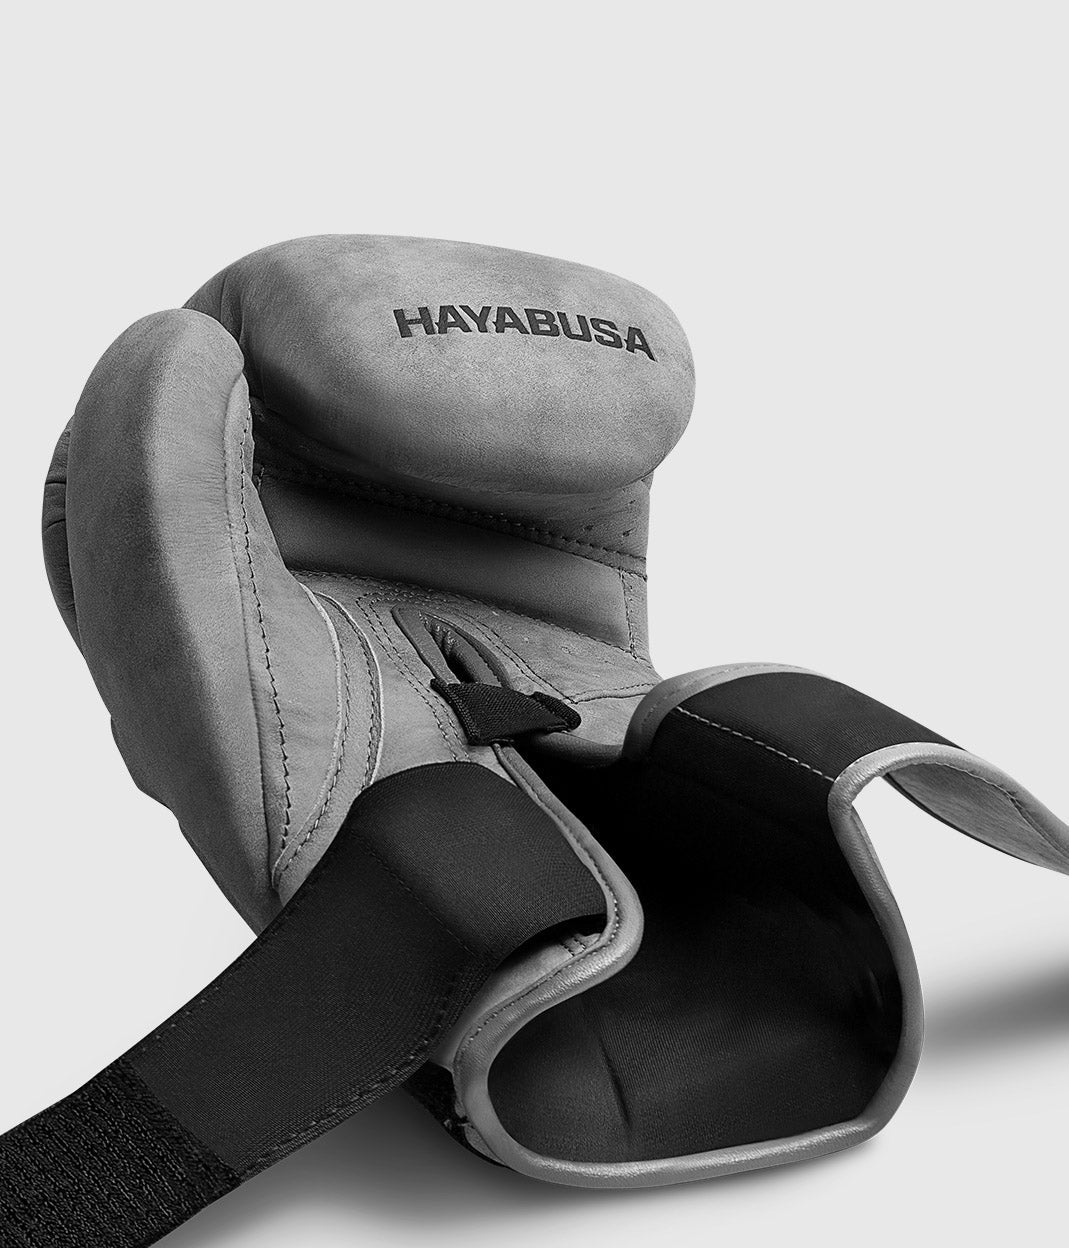 Hayabusa (Kick)Bokshandschoenen T3 LX - Grijs - (Kick)Bokshandschoenen